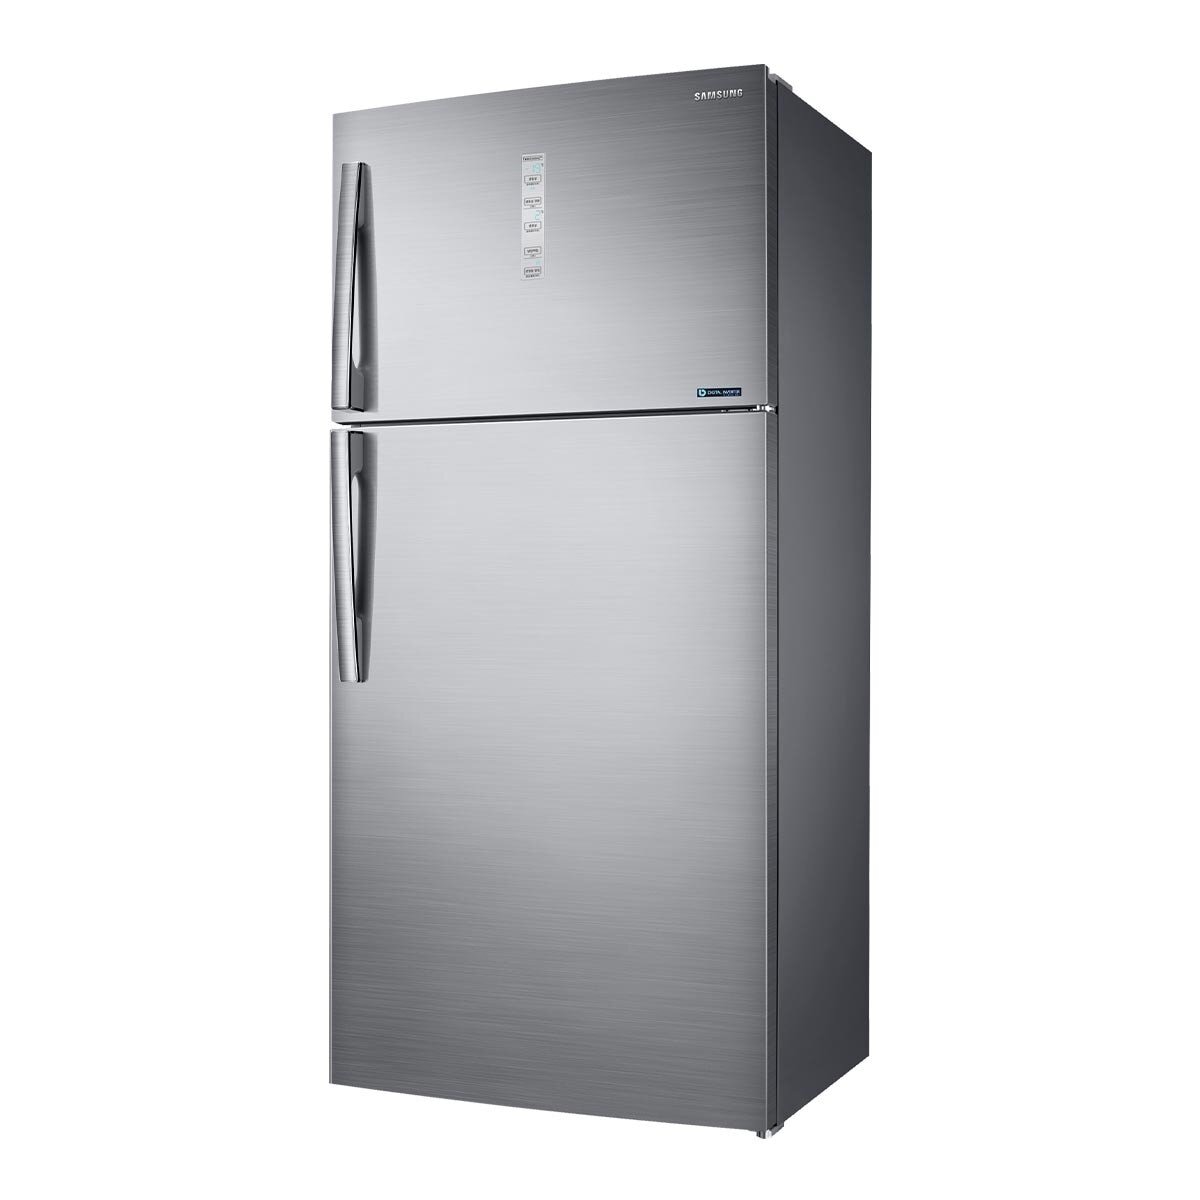 Samsung 雙循環雙門冰箱 623公升 RT62N704HS9/TW